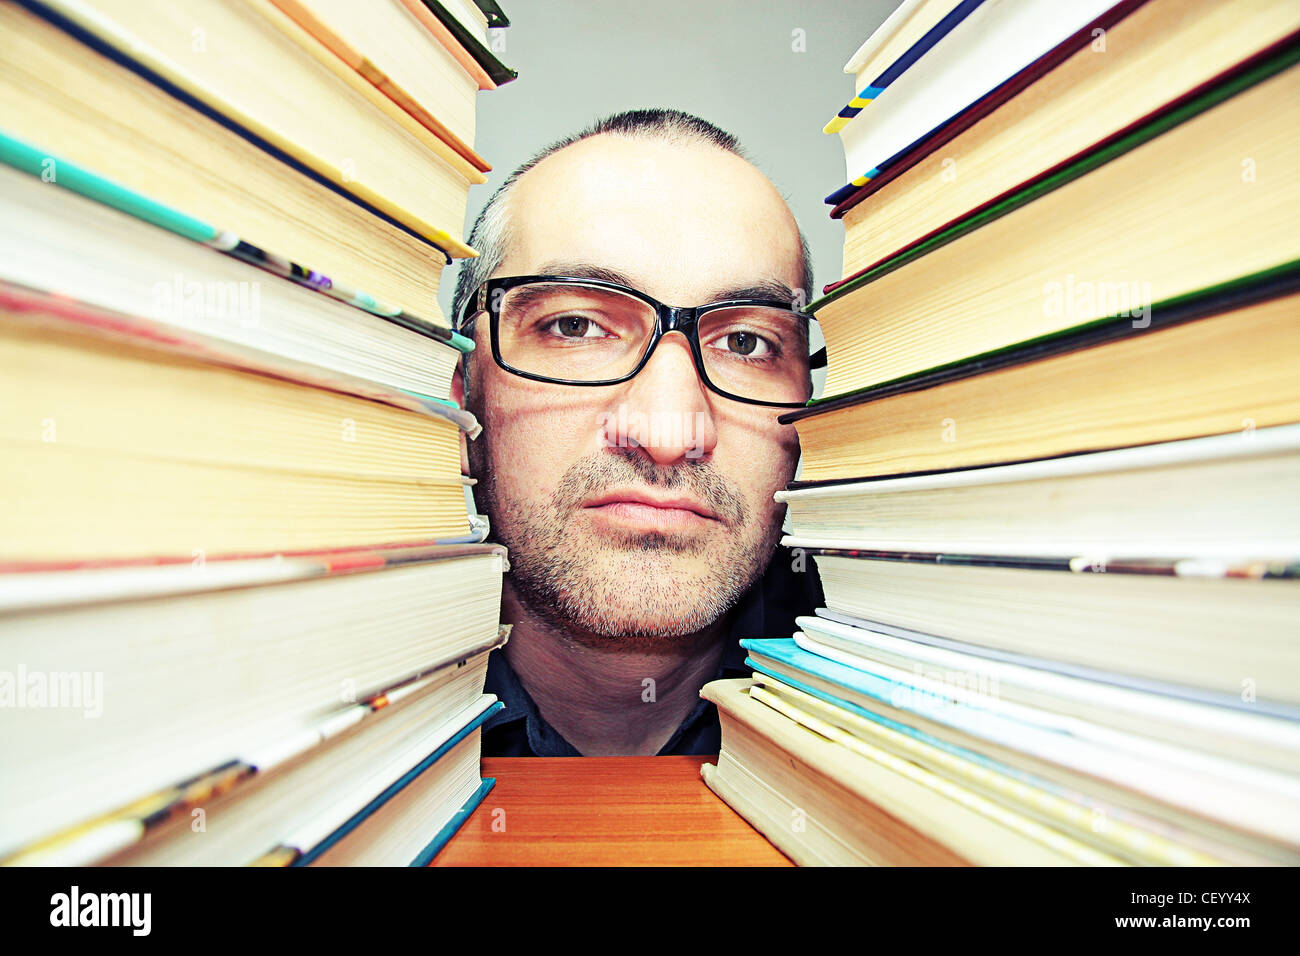 glasses person portrait man  book Stock Photo